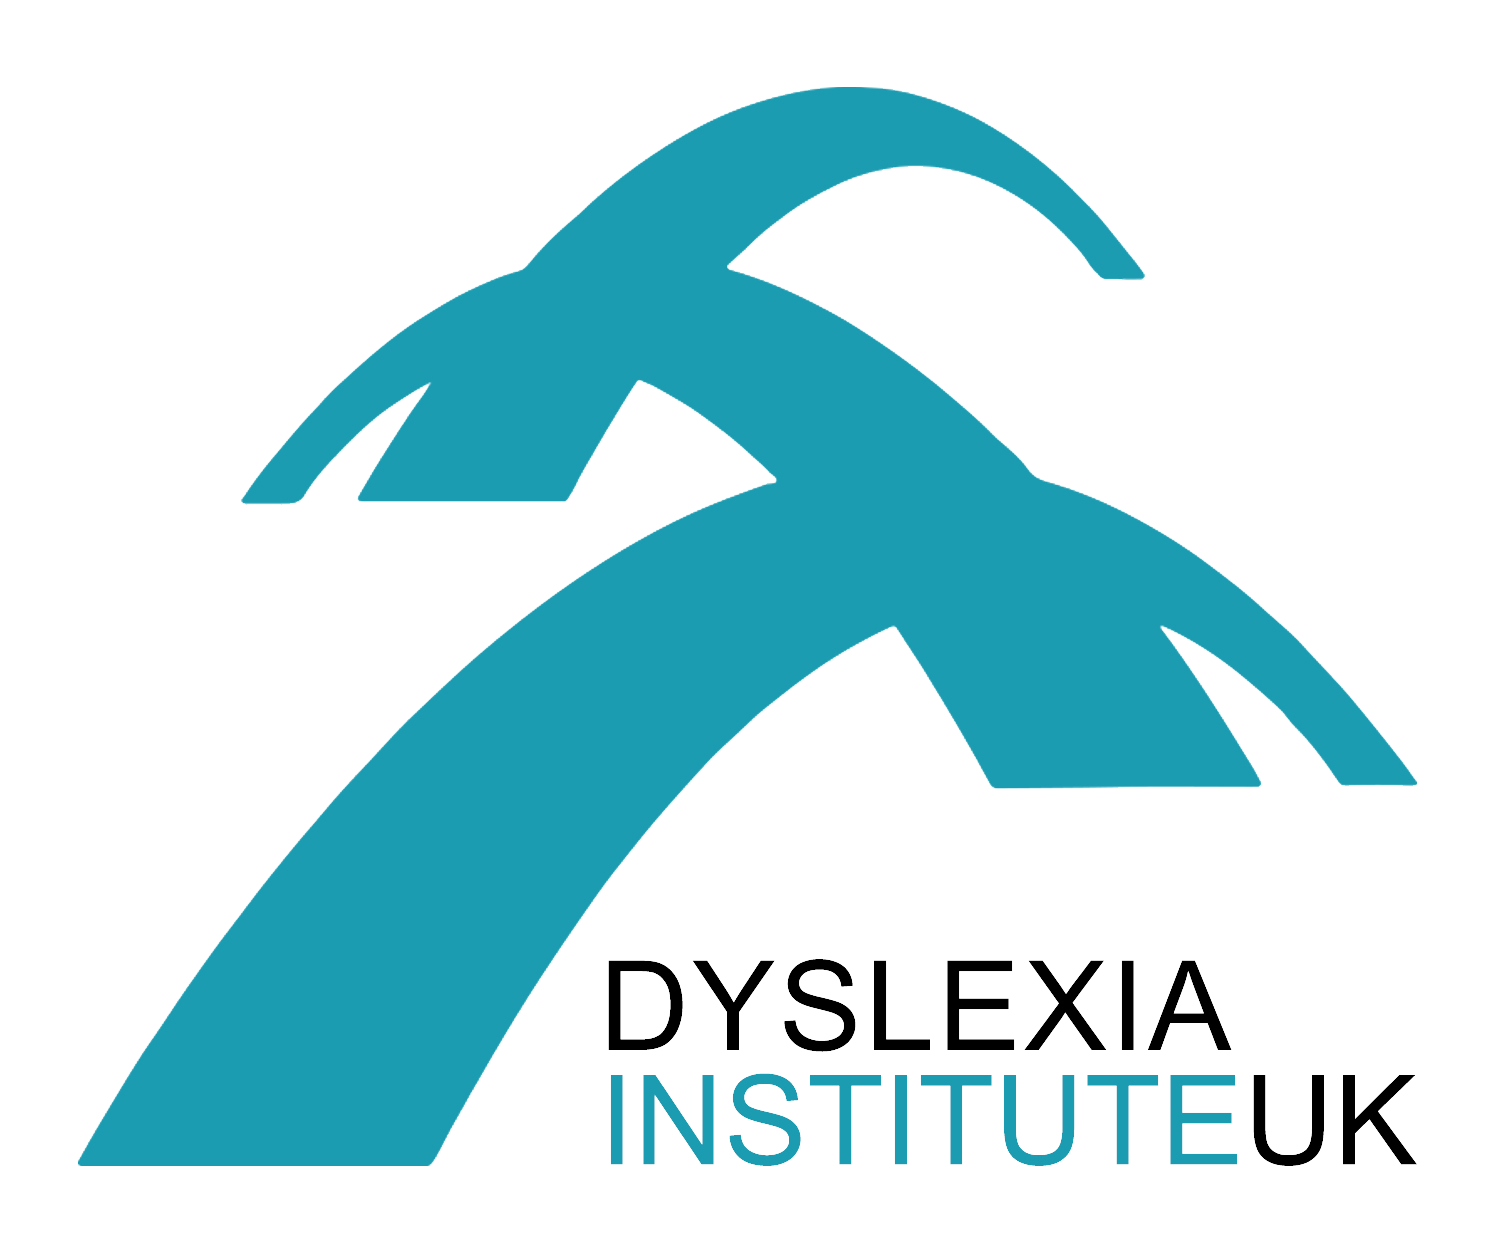 Dyslexia Institute UK